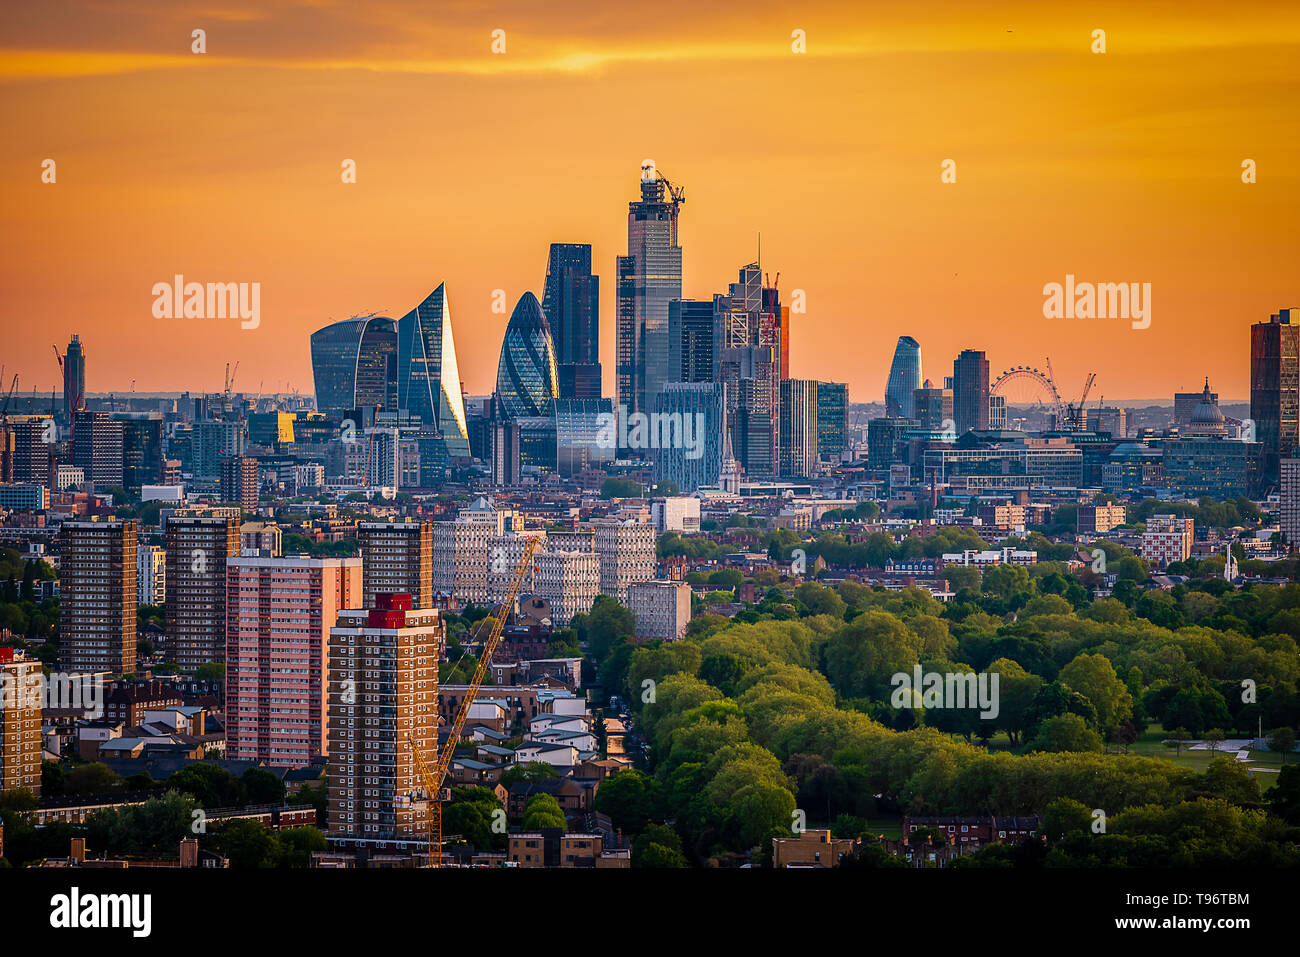 La ville de Londres au crépuscule Banque D'Images